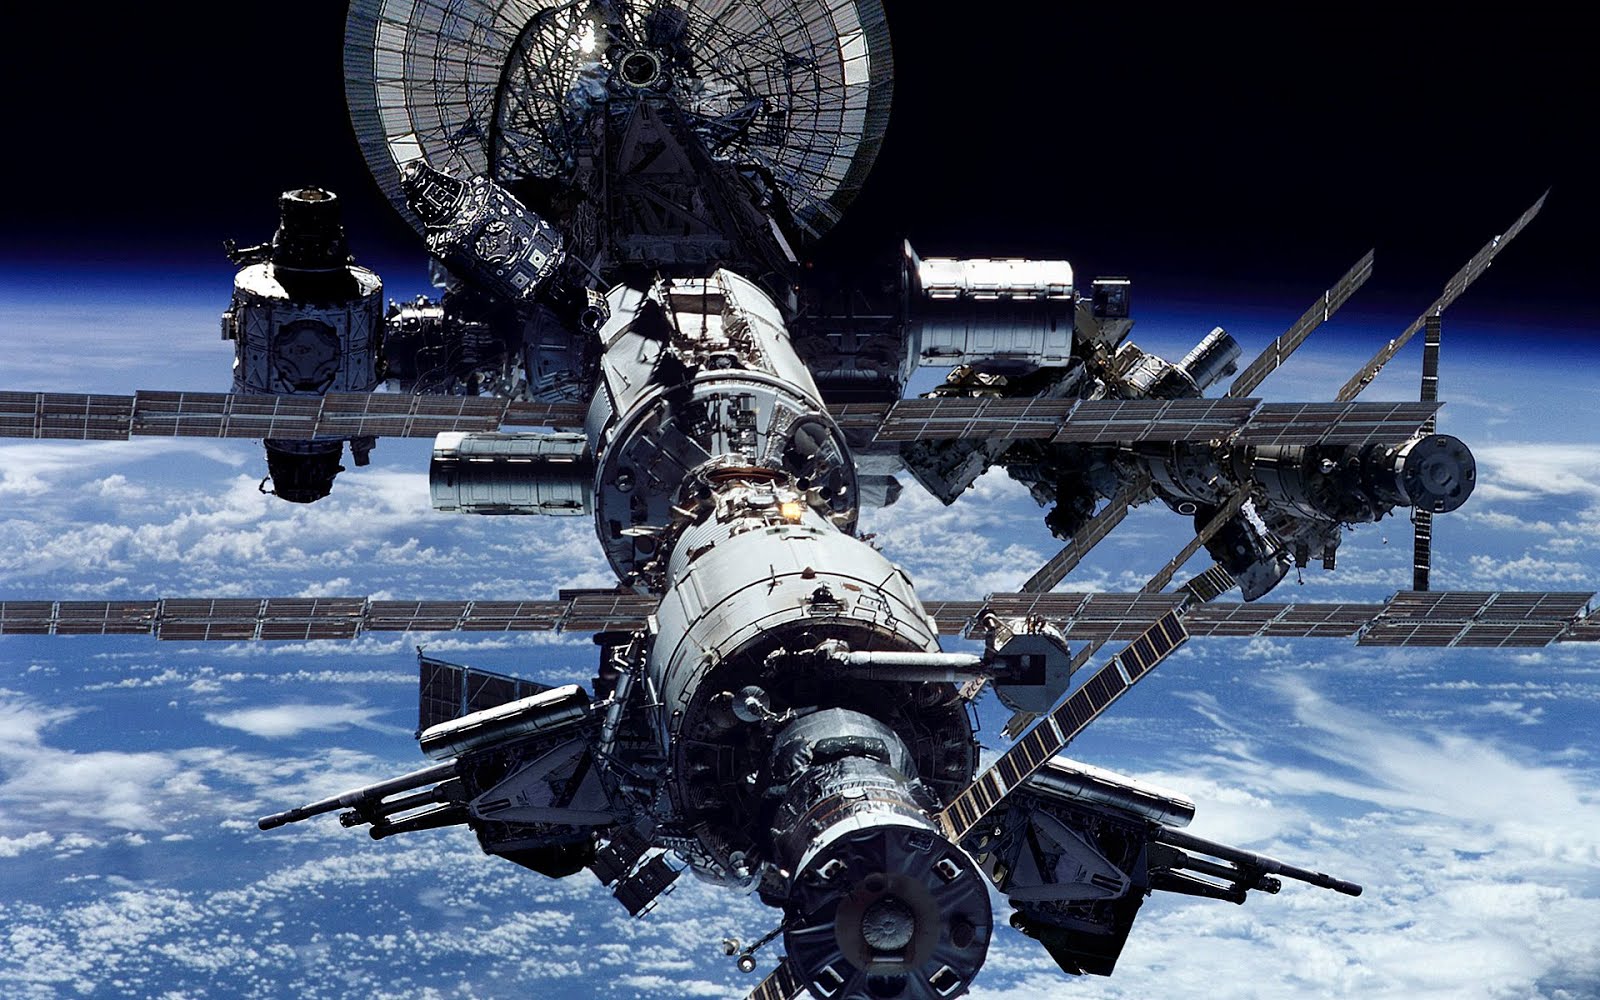 Ζωντανά η Γη από τον Διαστημικό Σταθμό "ISS"